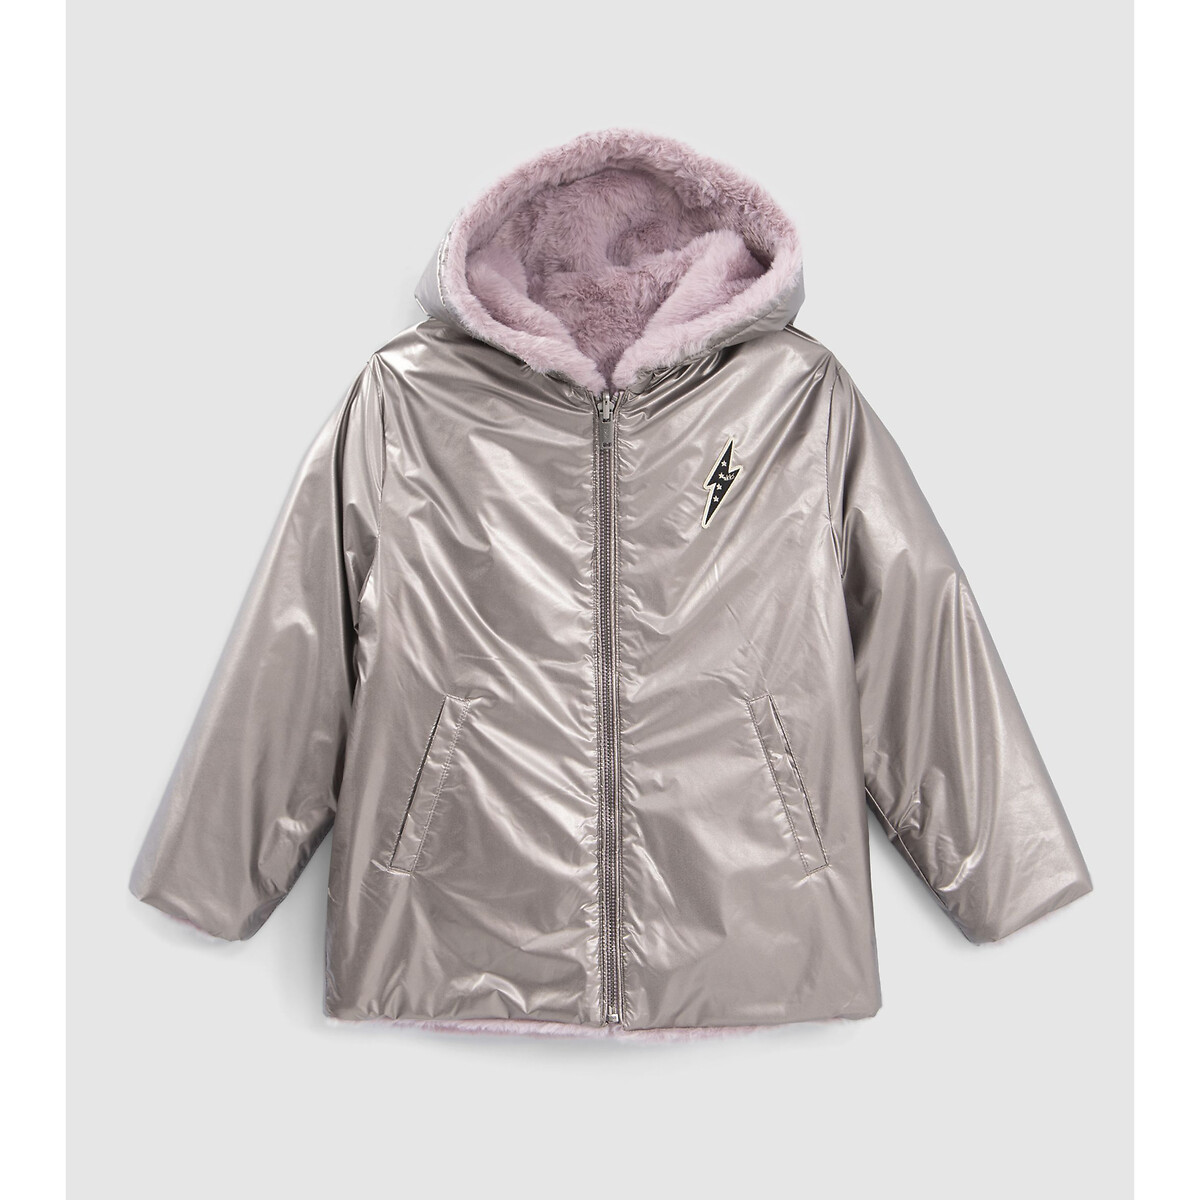 Куртка стеганая с капюшоном с металлическим отливом 6 лет - 114 см розовый куртка стеганая длинная утепленная с капюшоном 6 лет 114 см синий